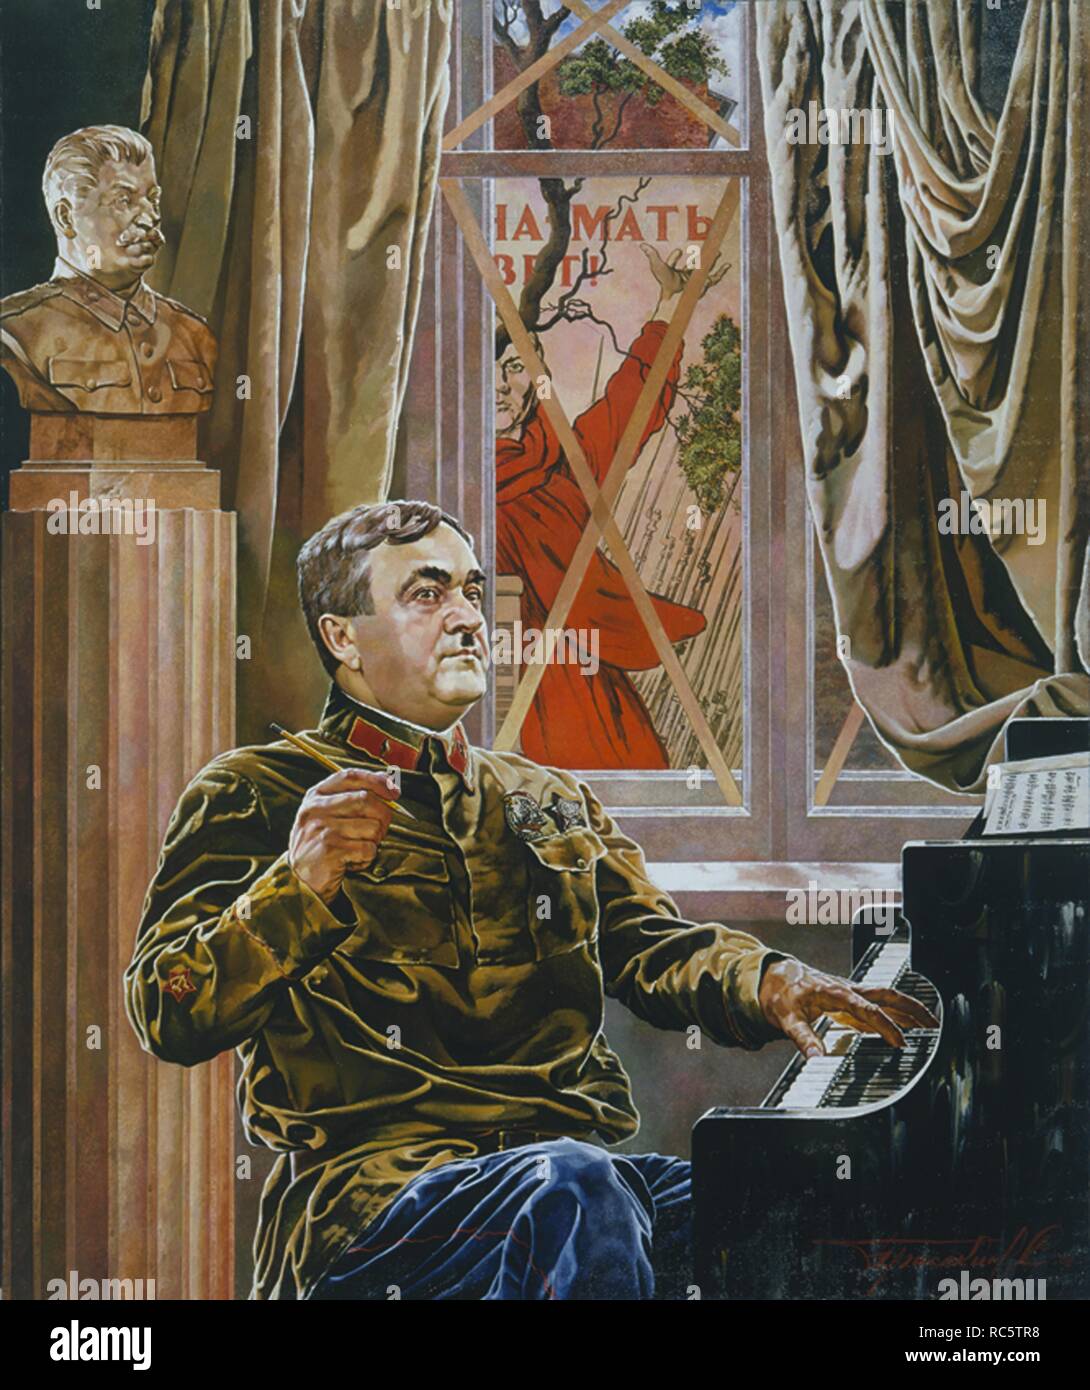 Sowjetische Komponist Alexander Wassiljewitsch Alexandrow. Museum: private Sammlung. Autor: Prisekin, Sergej Nikolaevich. Stockfoto